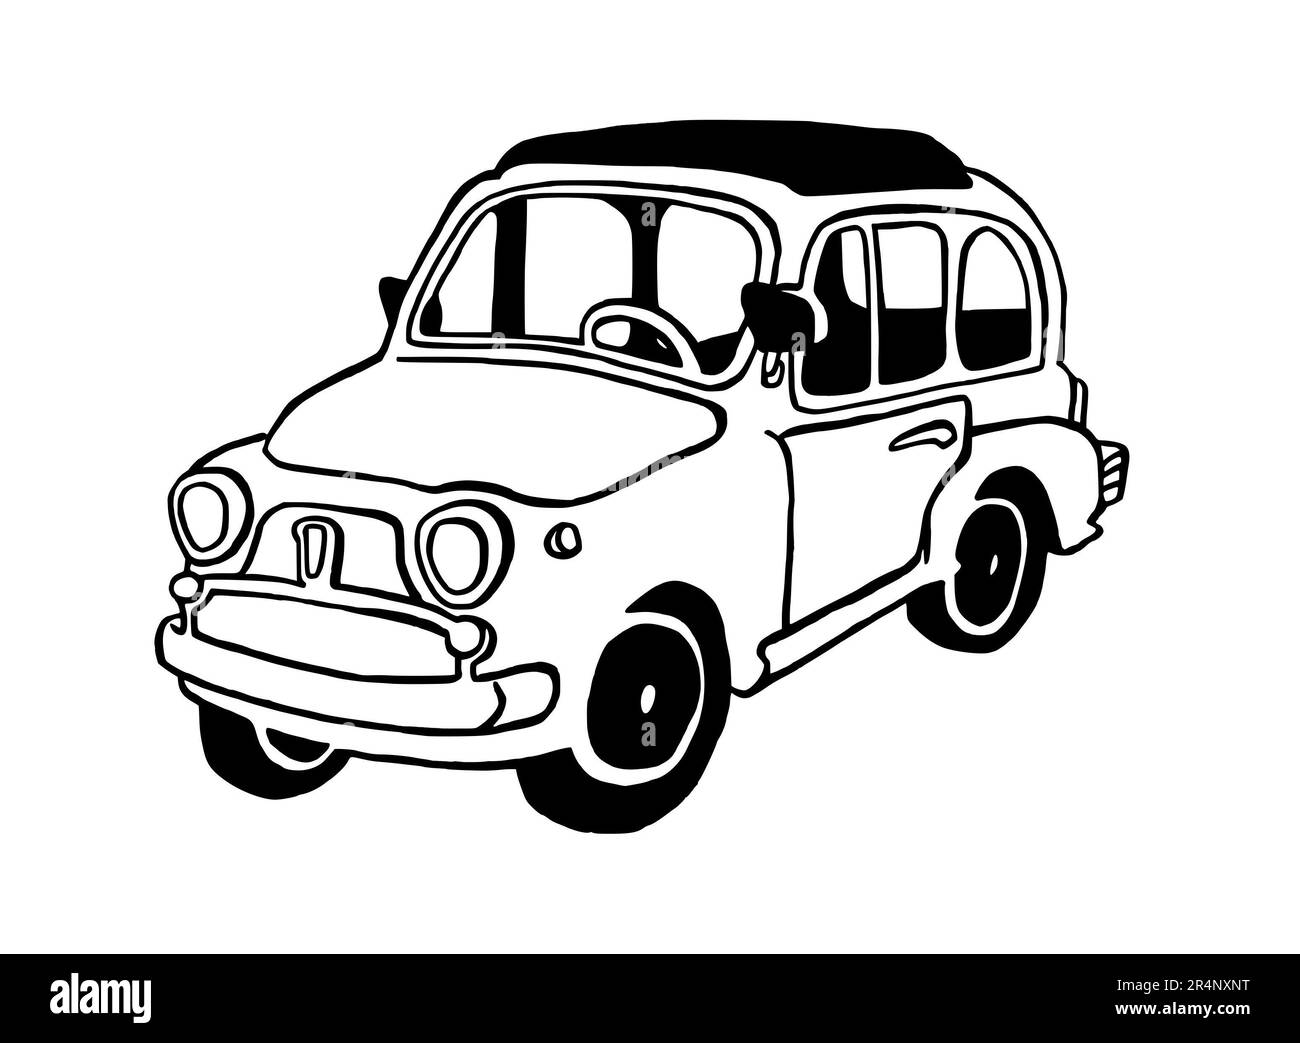 Handgezeichnete Illustration eines Retro-Autos, italienisch, volle Größe, isoliert auf weißem Hintergrund, mit schwarzer Strichzeichnung Stockfoto